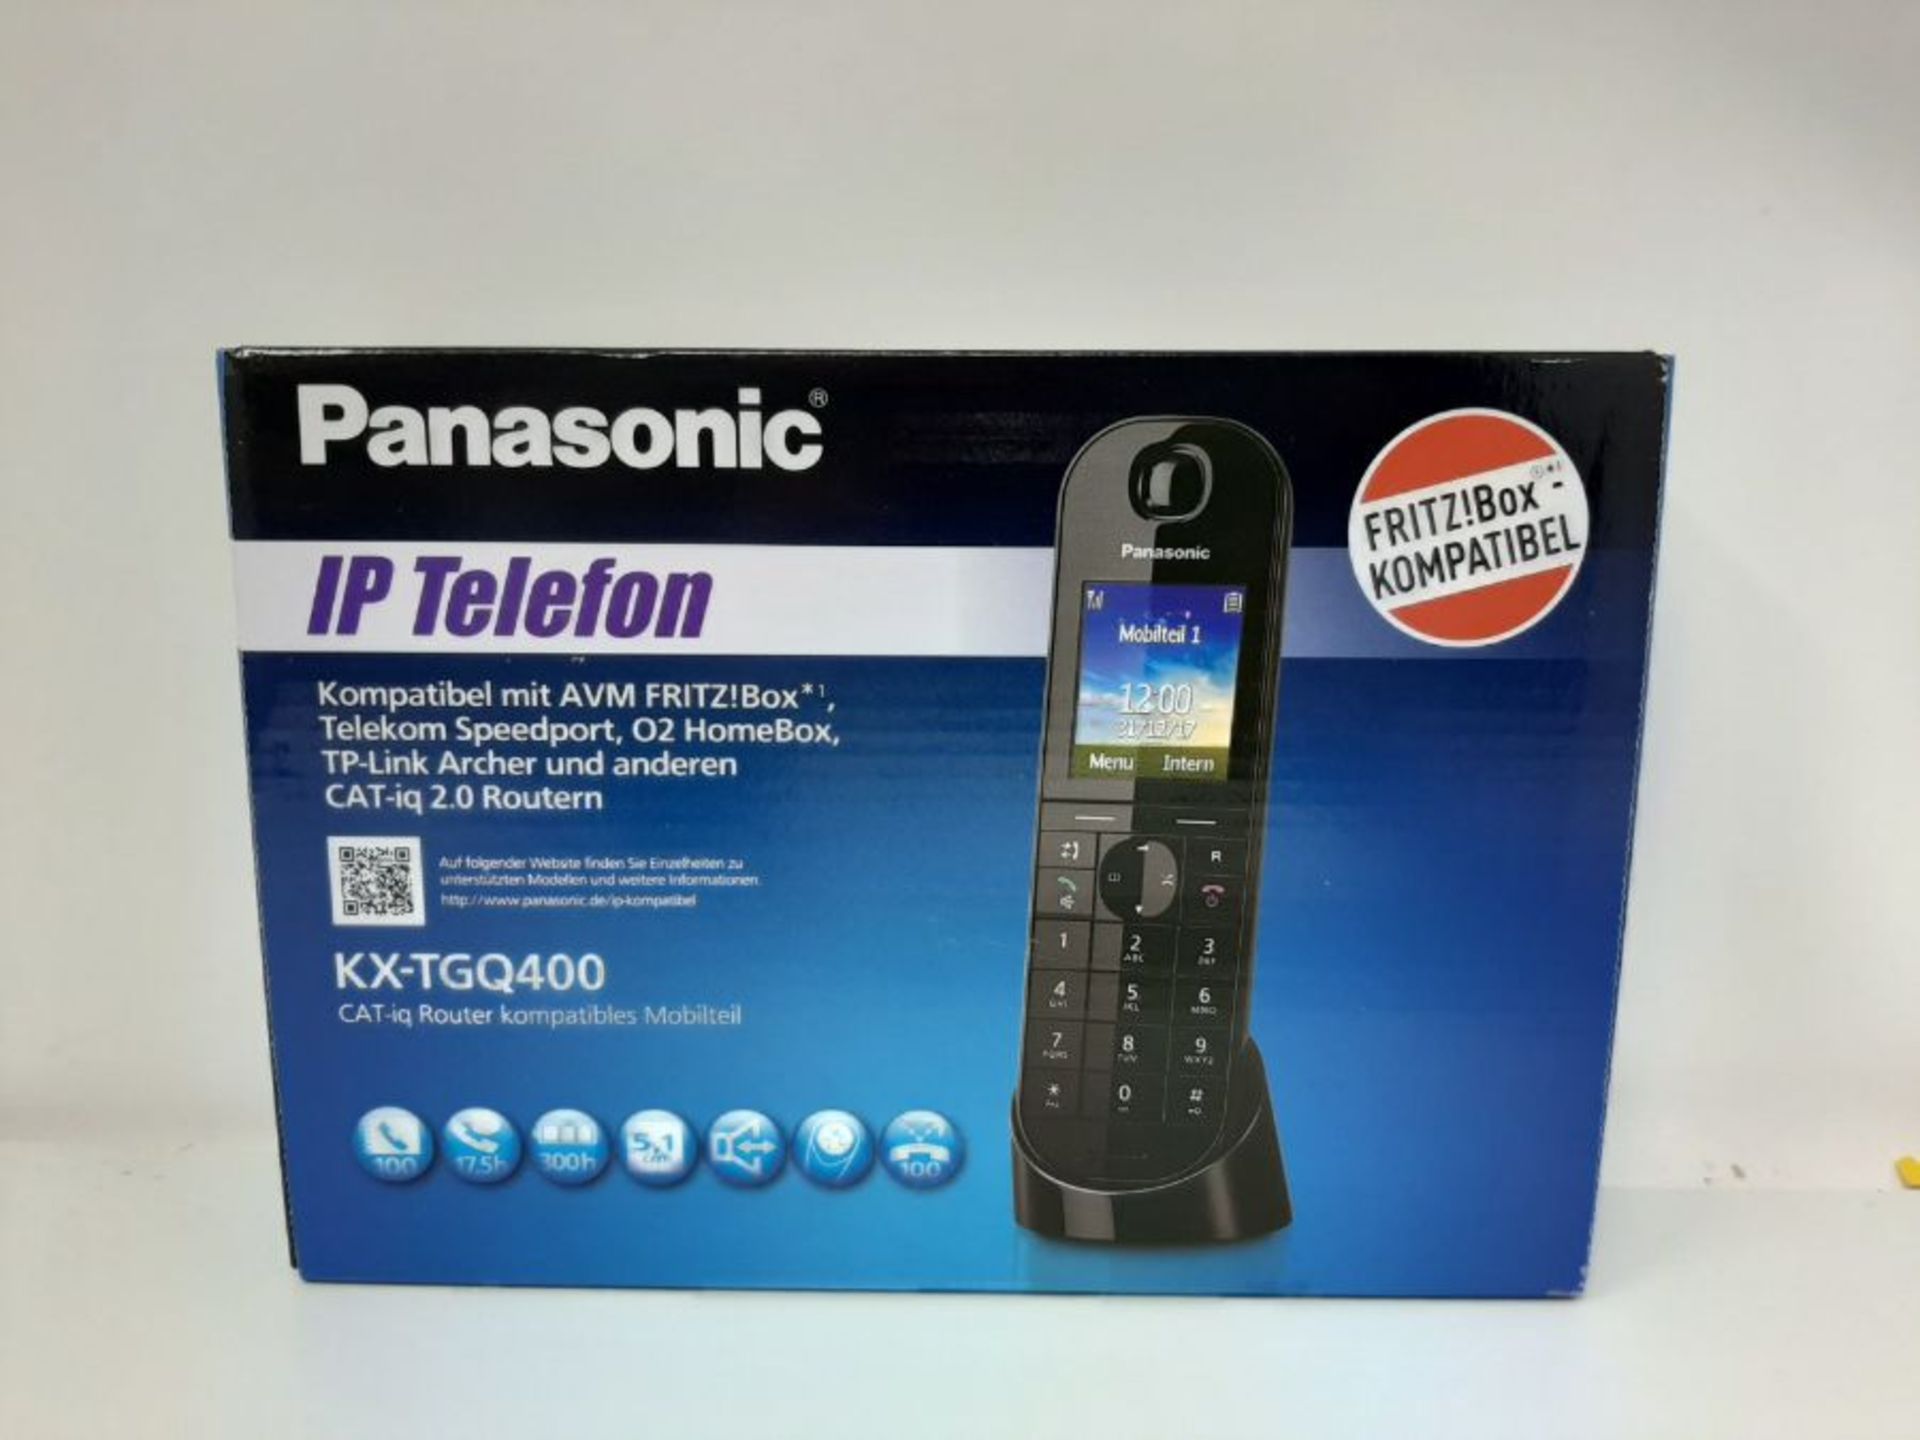 Panasonic KX-TGQ400GB DECT IP-Telefon (schnurlos, CAT-iq 2.0 kompatibel, Freisprechmod - Image 2 of 3